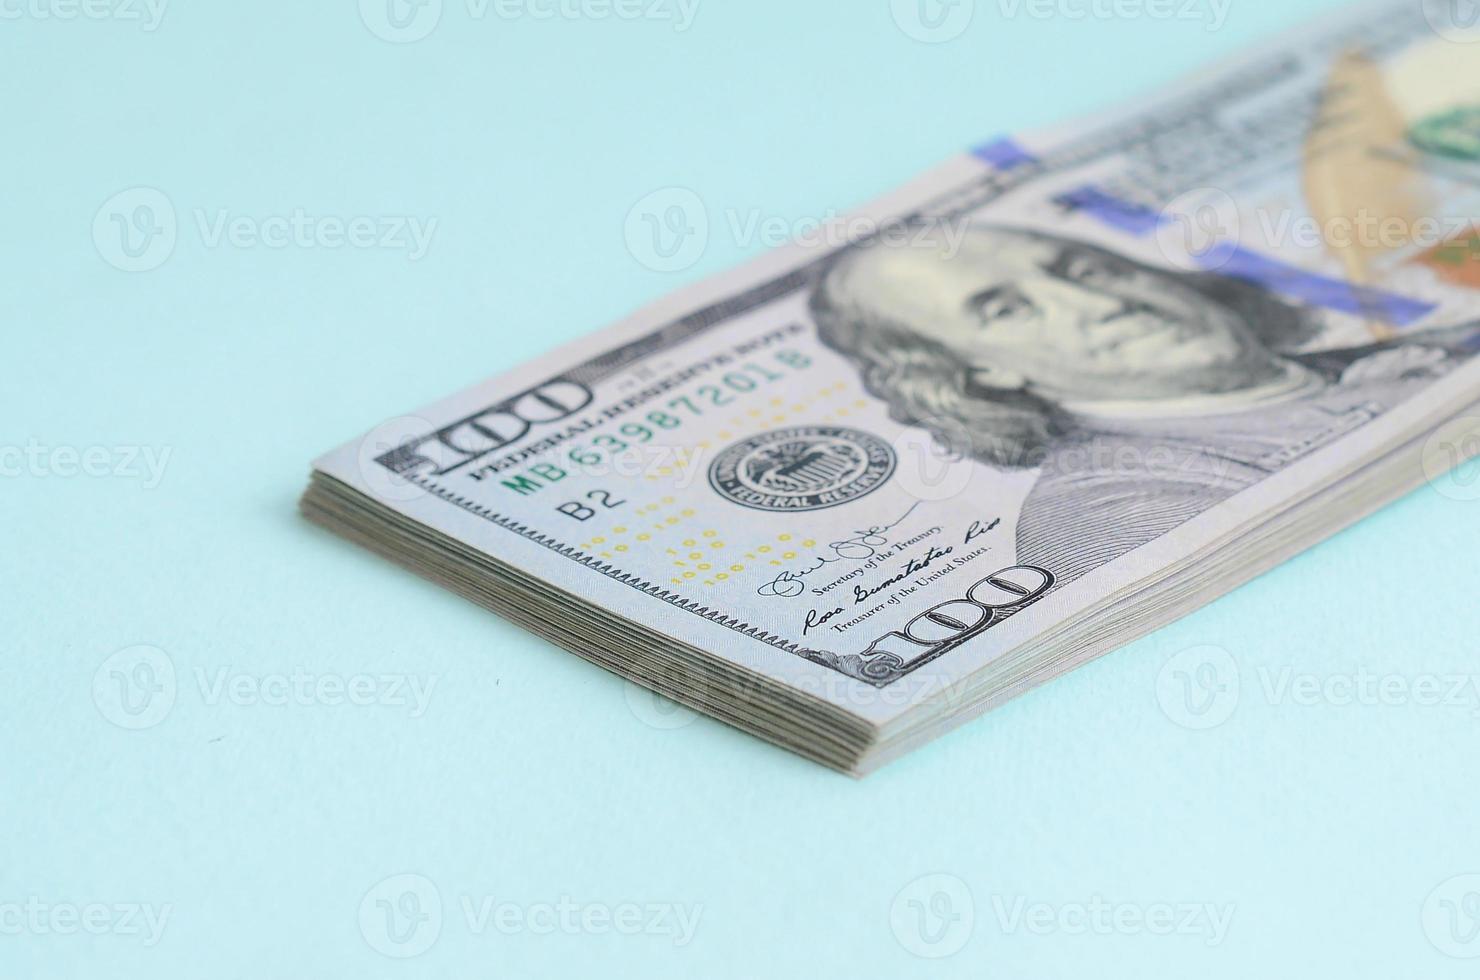 los billetes de dólar estadounidense de un nuevo diseño con una franja azul en el medio se encuentran sobre un fondo azul claro foto